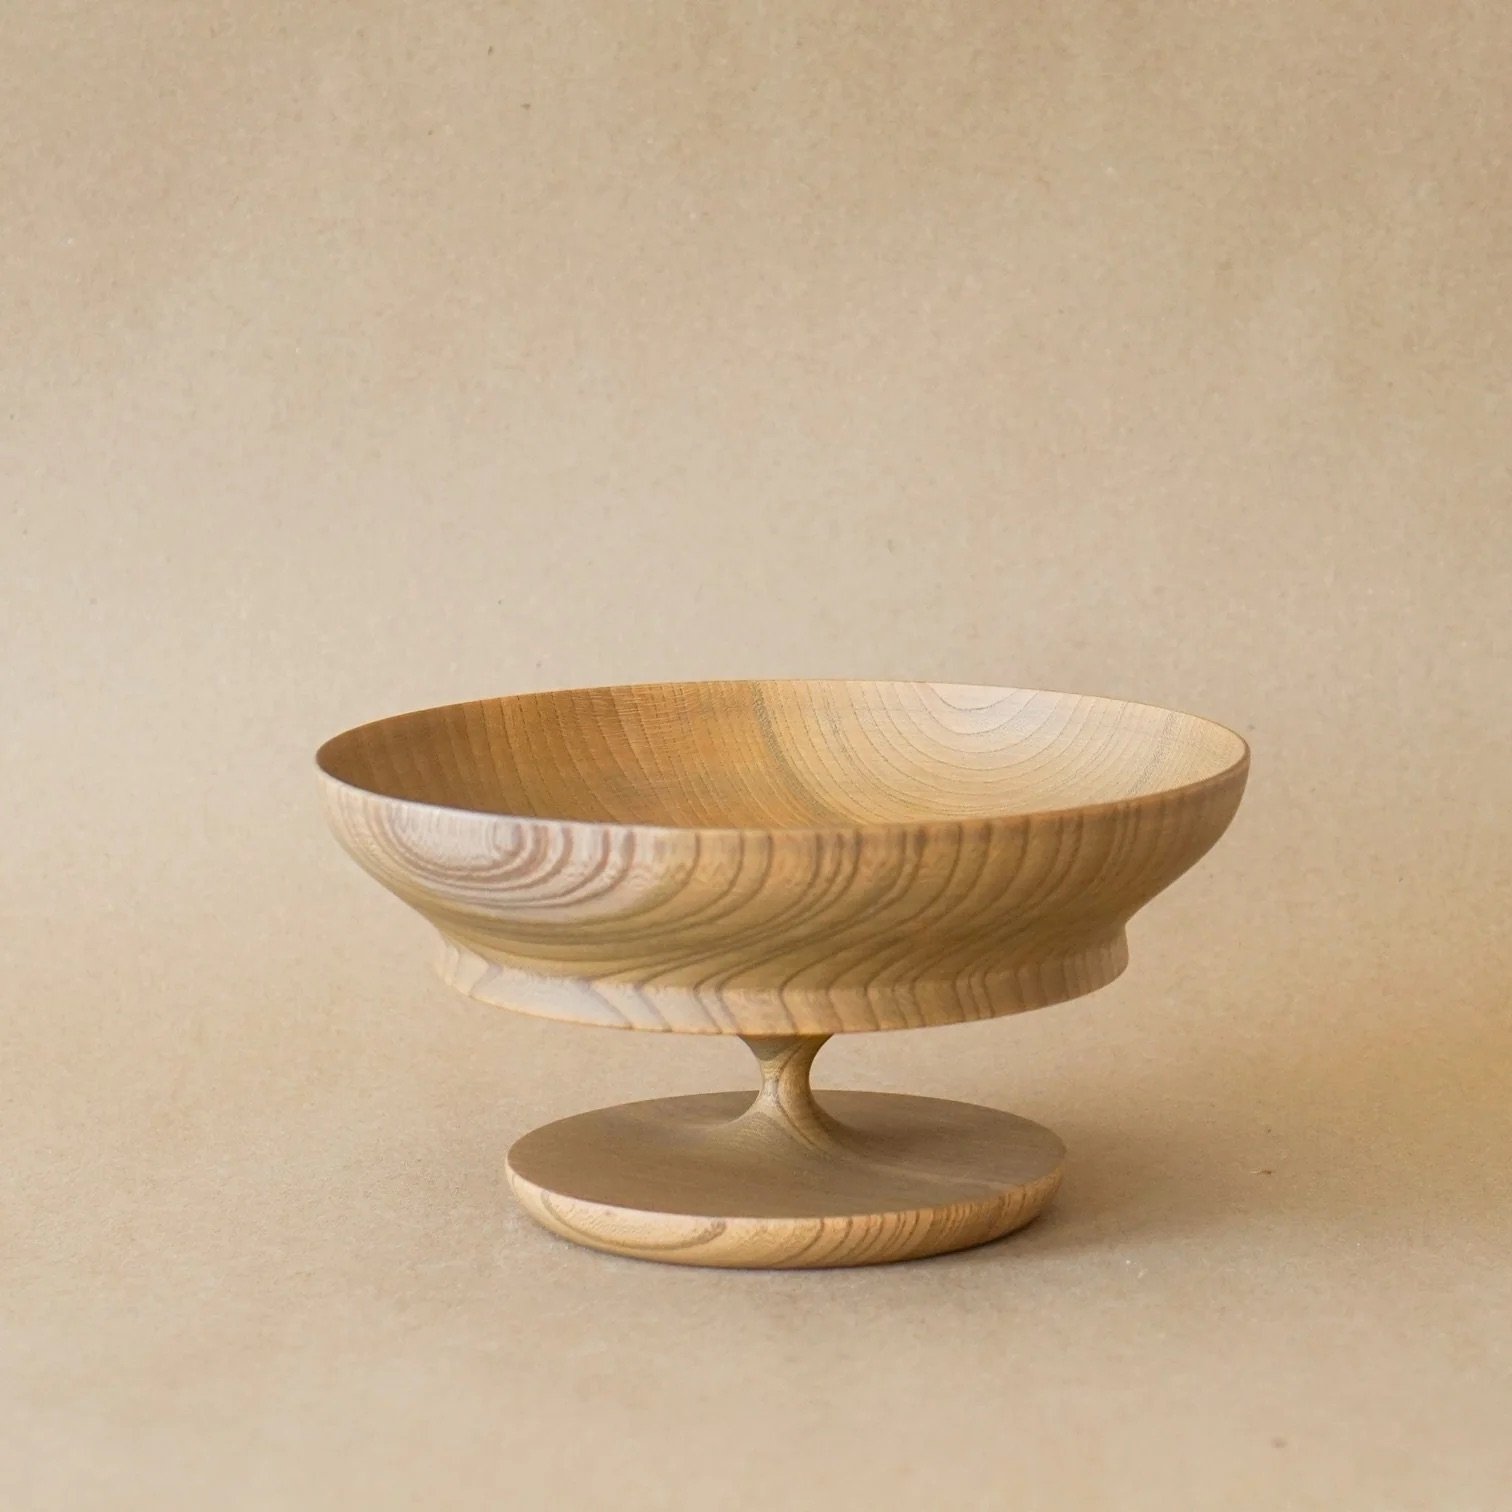 morihata-bowls-sinafu-6-0-stand-bowl-in-smokey-grey-37828400808191_1512x.jpeg